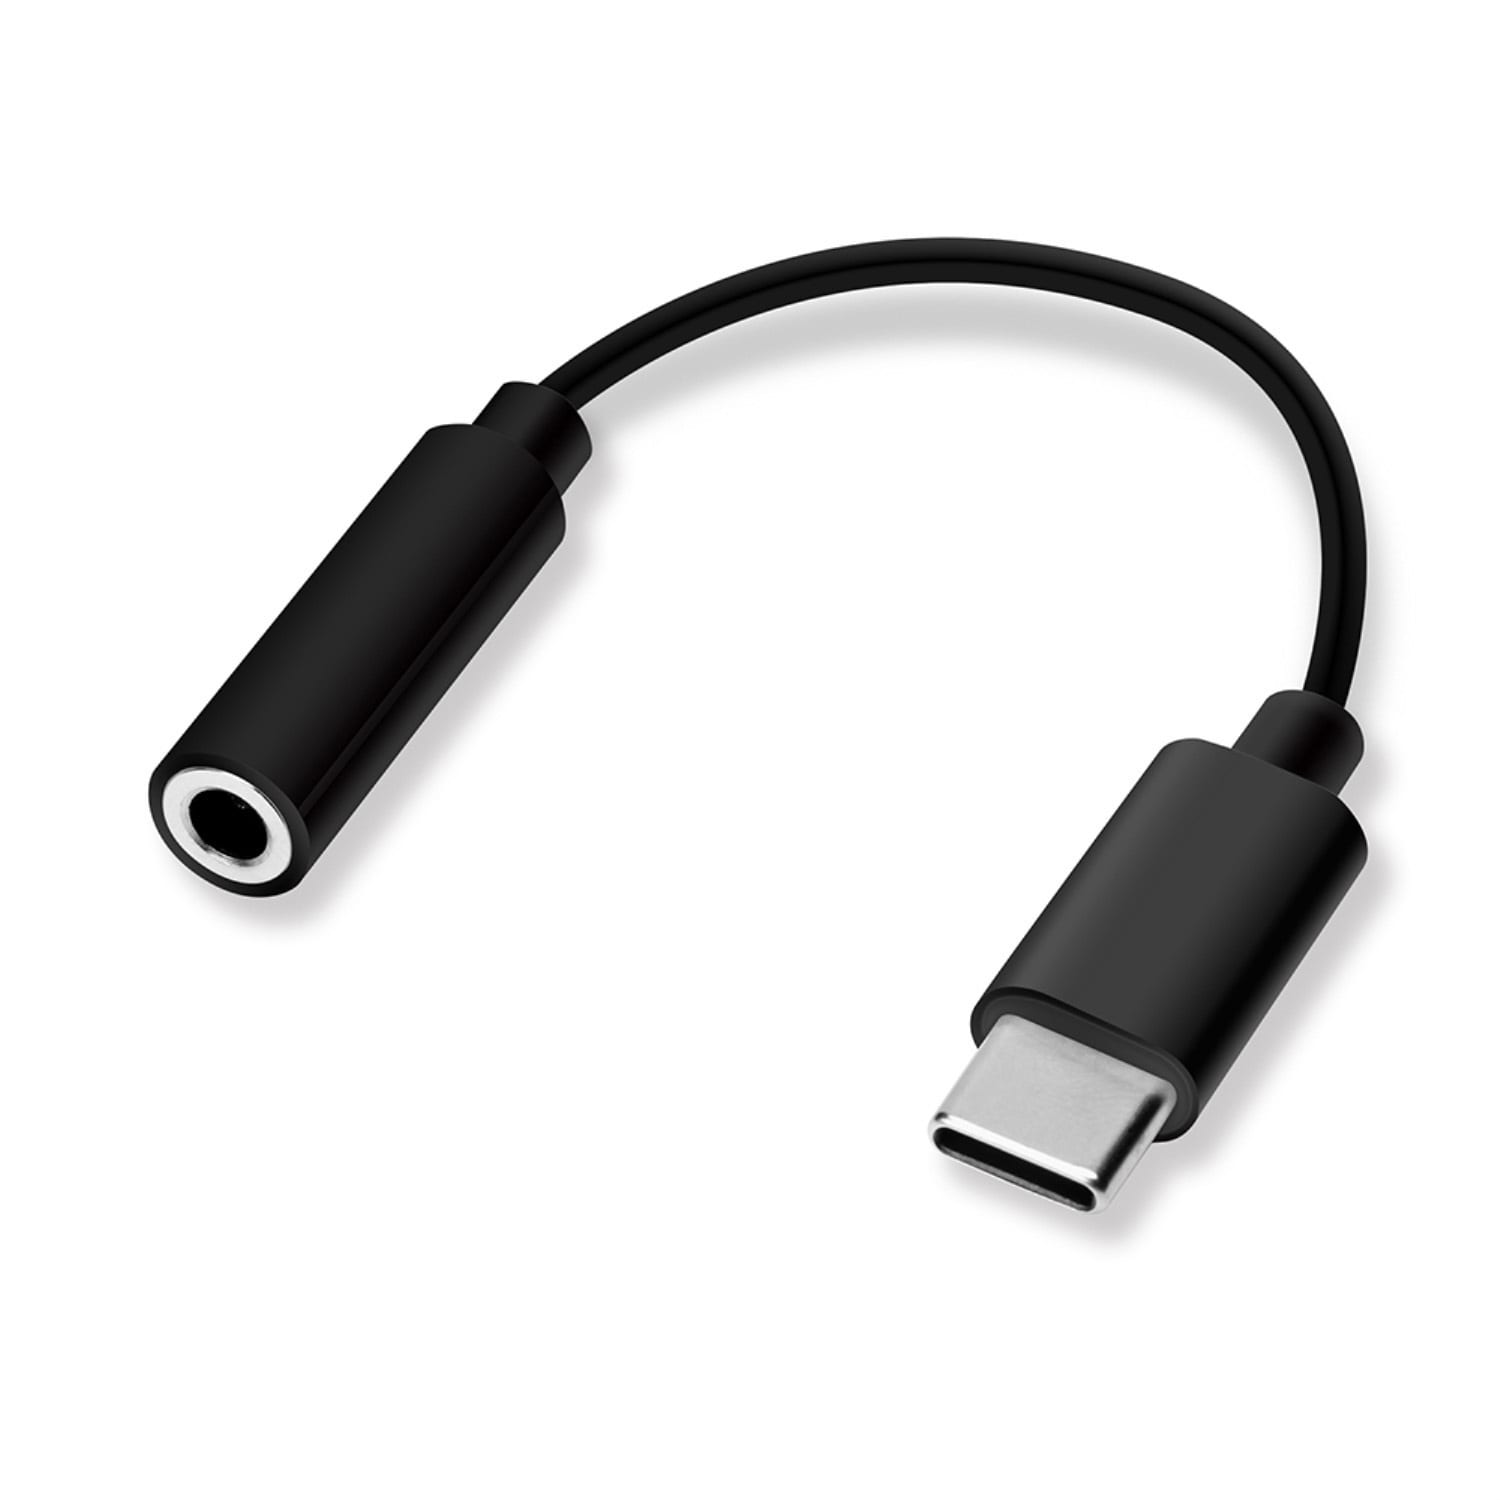 USB タイプC to 3.5mm イヤホン変換アダプタ Type-C m4o